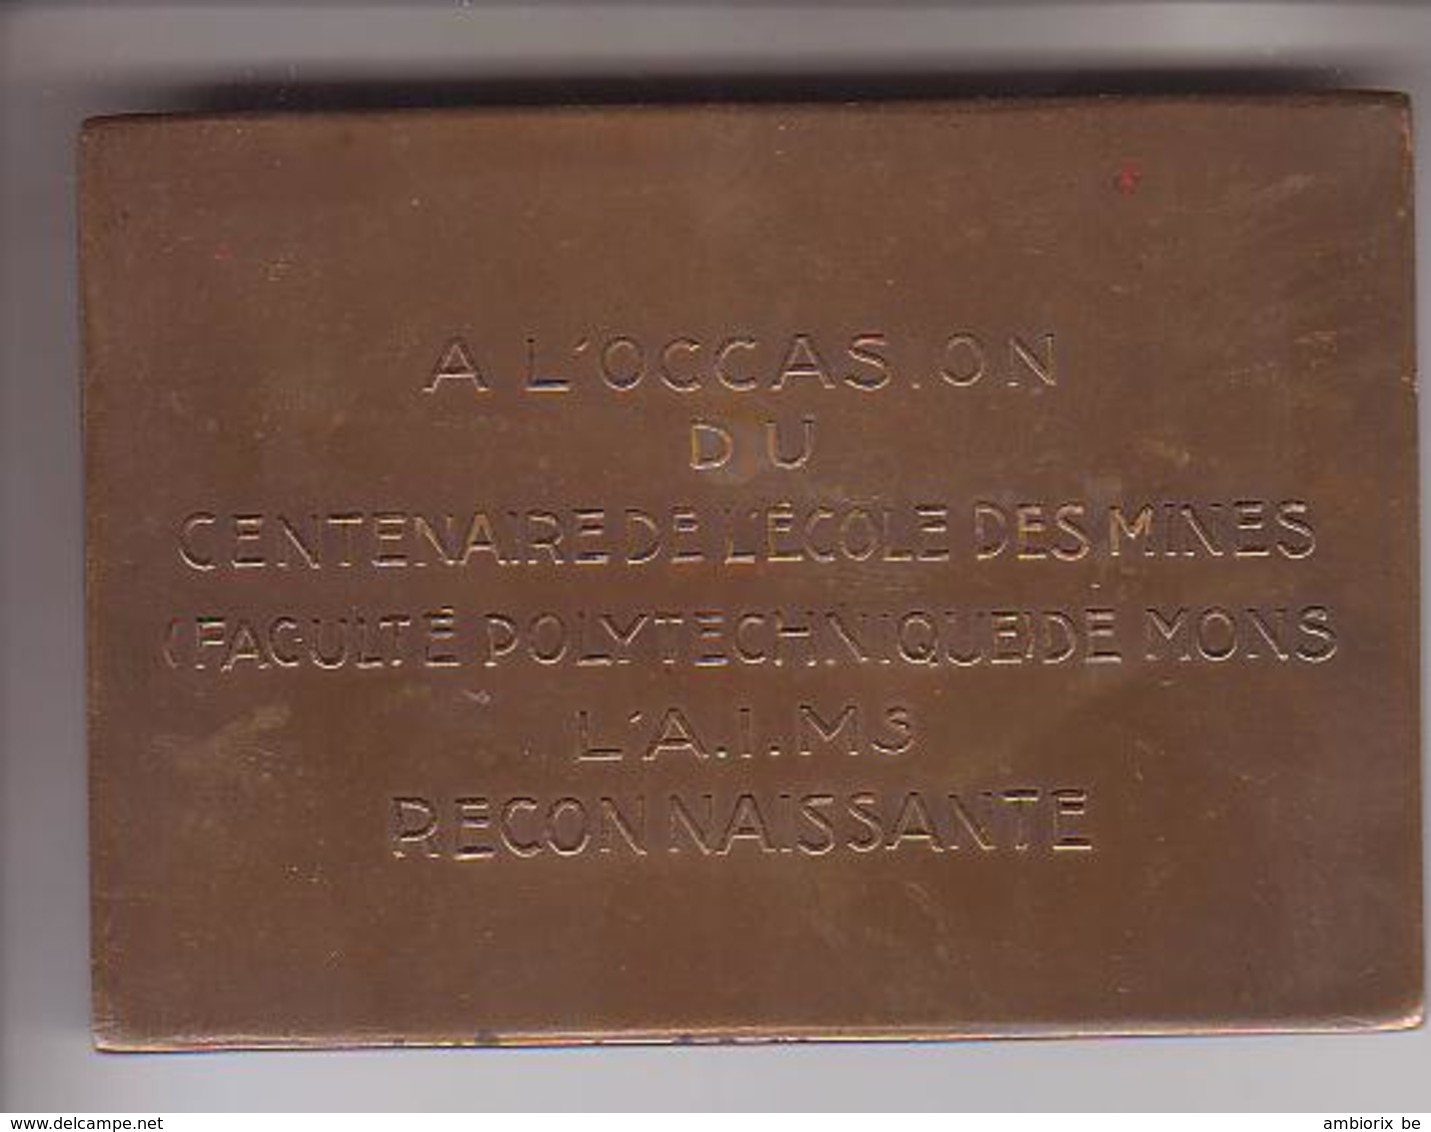 Centenaire De L'Ecole Des Mines (Faculté Polytechnique De Mons) 1837 - 1937 - Devillez Macquet Halleux Yernaux - Unternehmen